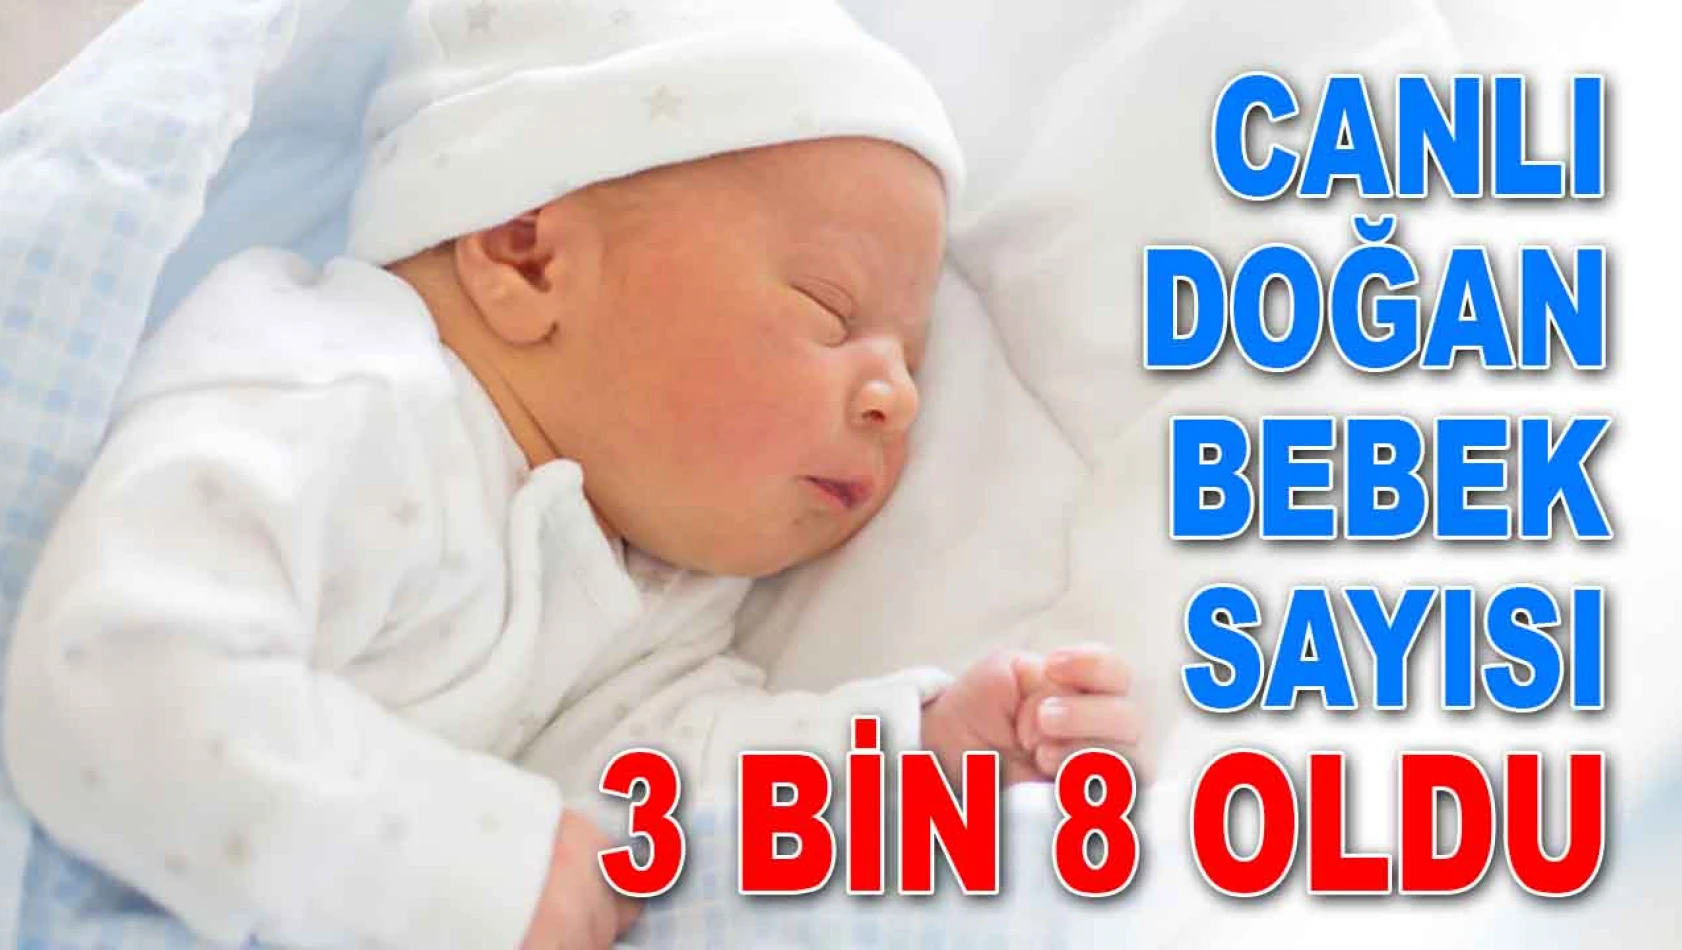 Kastamonu'da Canlı Doğan Bebek Sayısı 3 Bin 8 Oldu